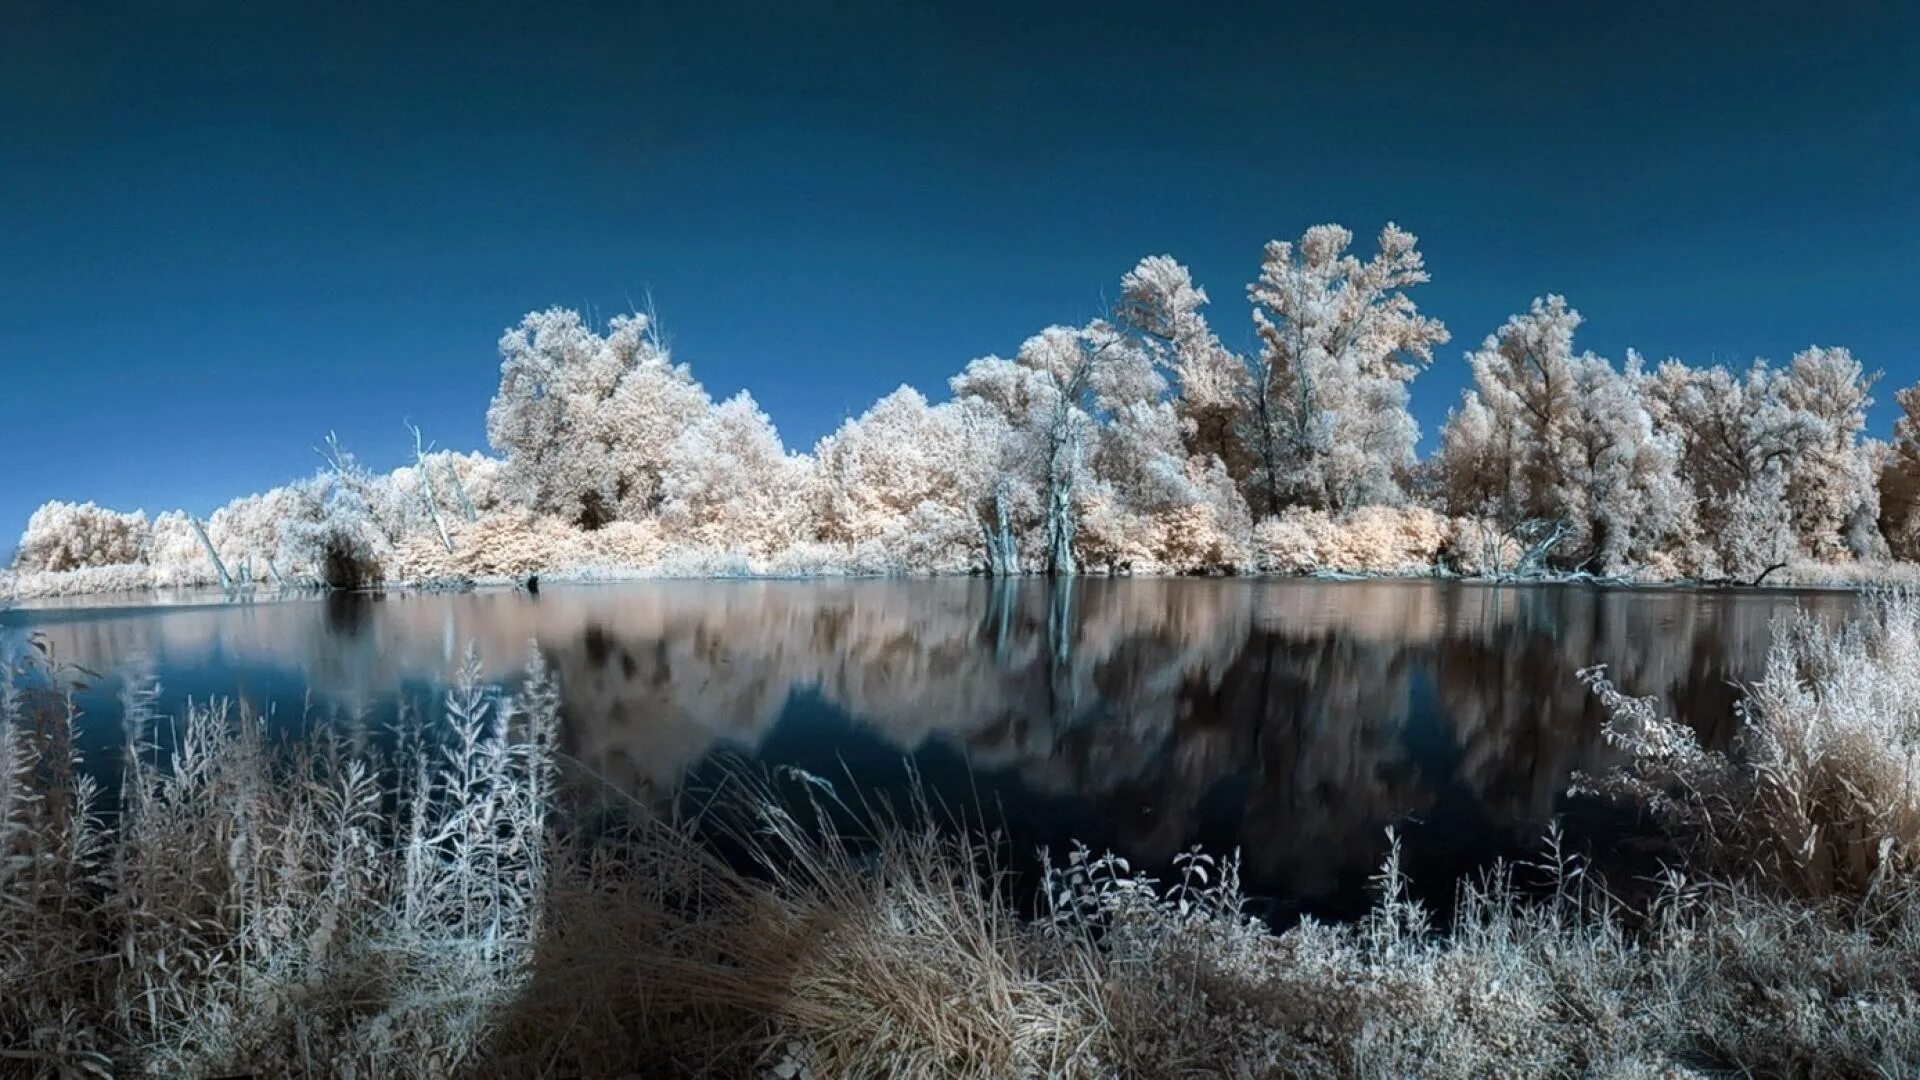 White lake. Бельгия зима природа. Иран природа зима. Обои в Одноклассники пейзаж зима. Картинки на телефон природа зима.